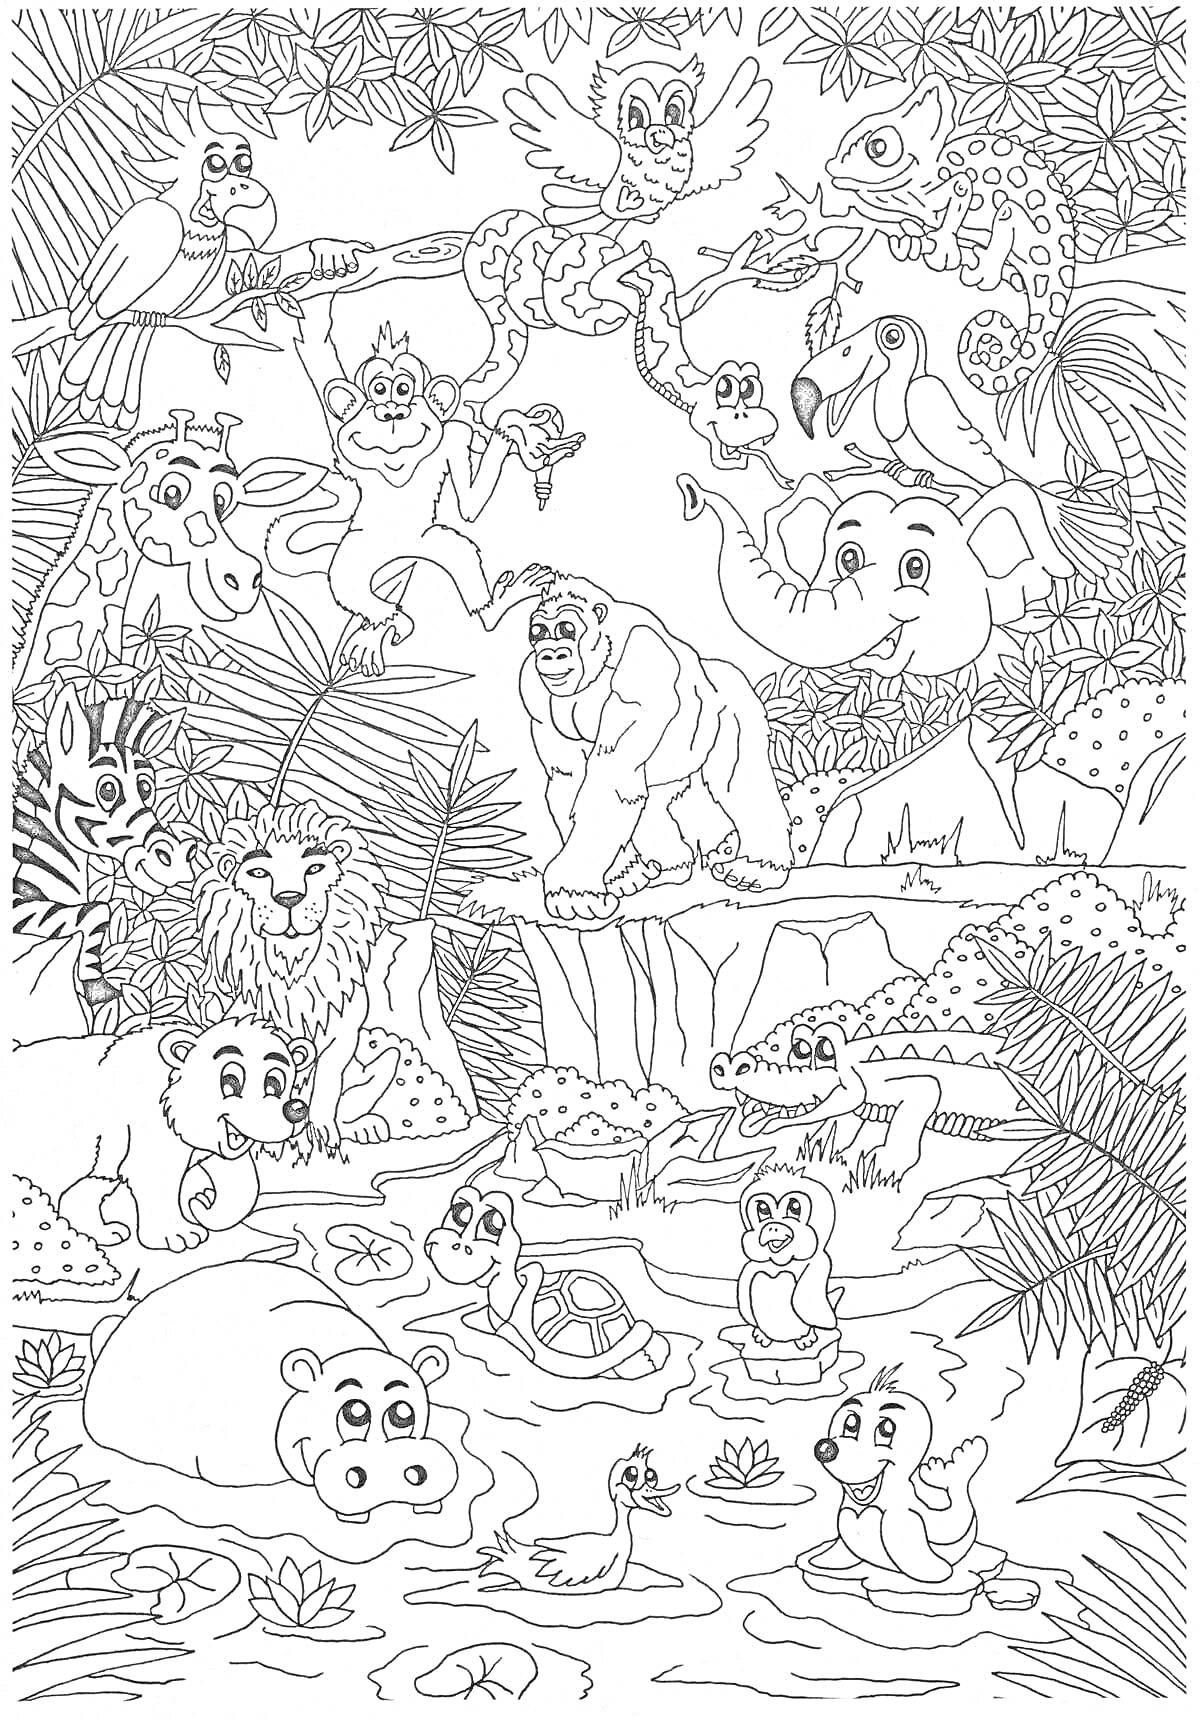 На раскраске изображено: Животные, Джунгли, Водопад, Фламинго, Лев, Медведь, Слон, Черепаха, Бегемот, Крокодил, Водоем